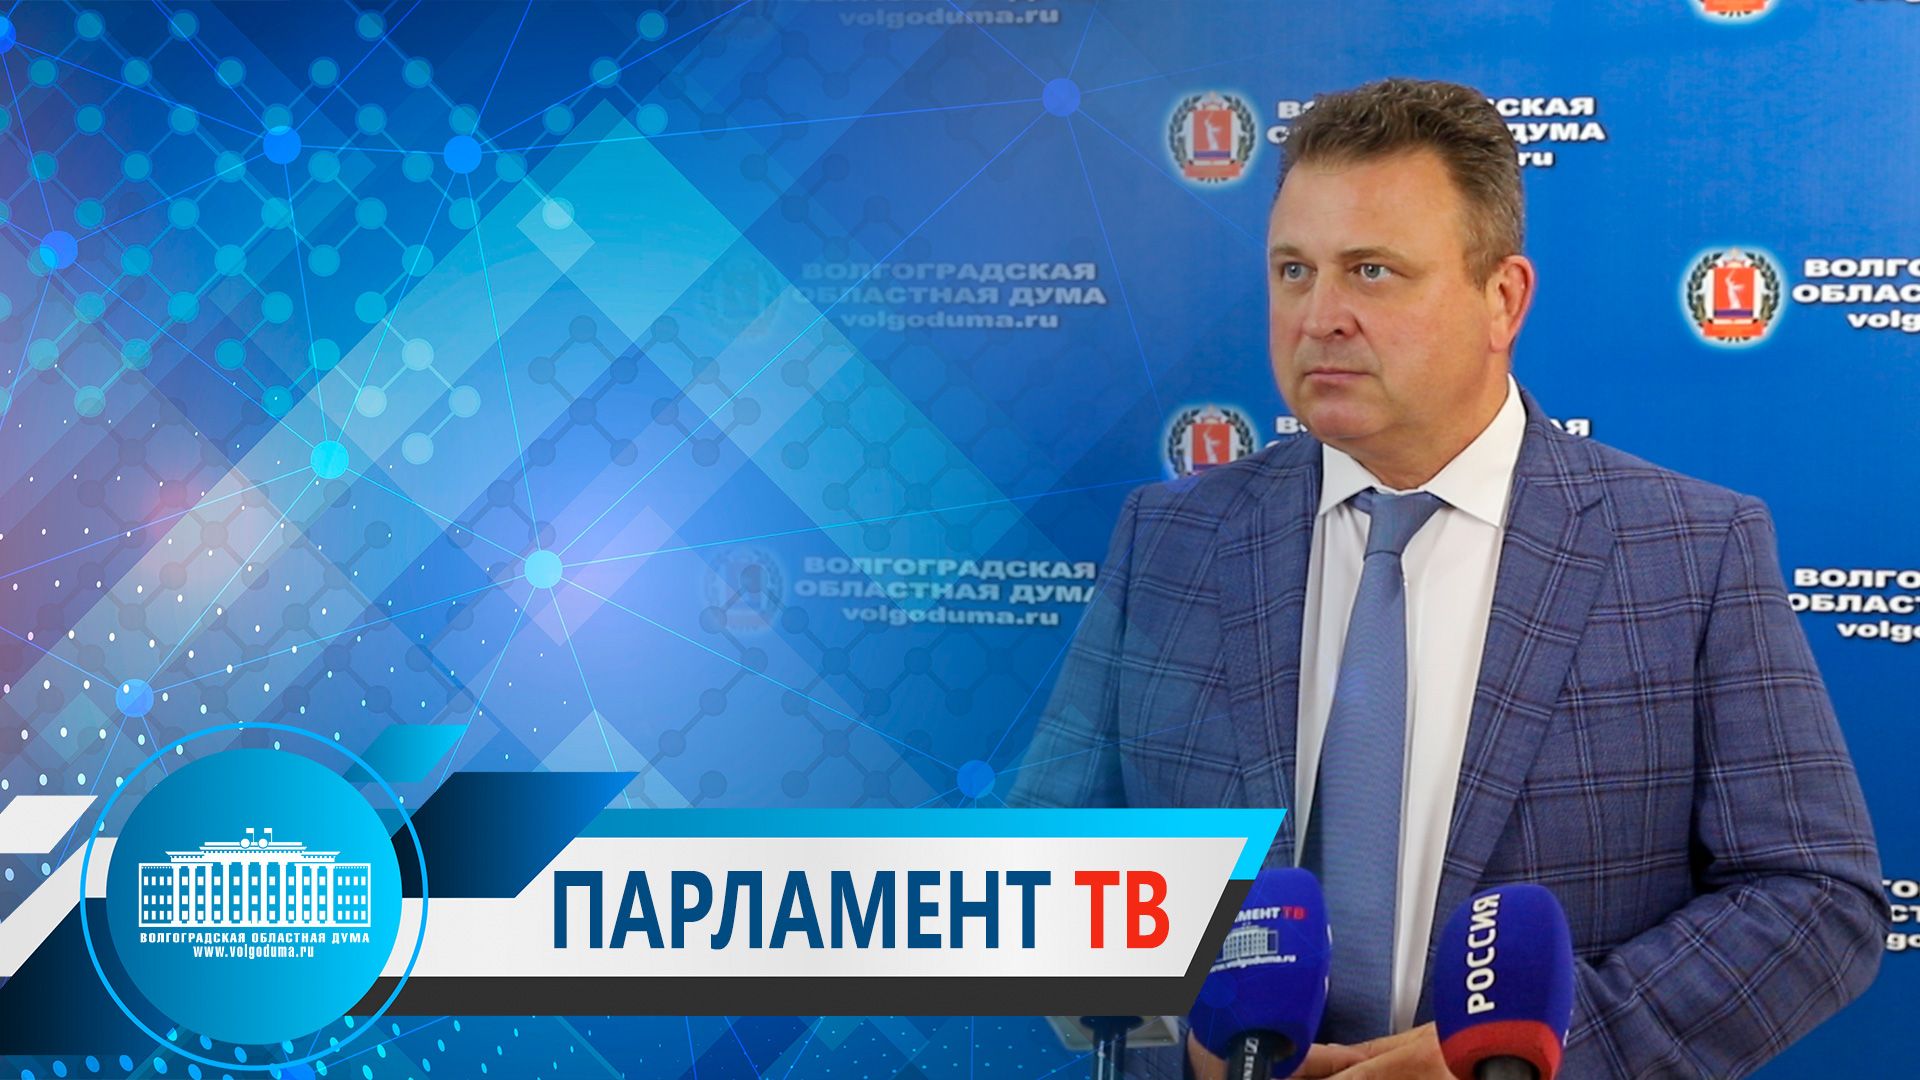 Владимир Ефимов: "Принятые изменения в бюджет региона говорят о большом доверии федерального центра"